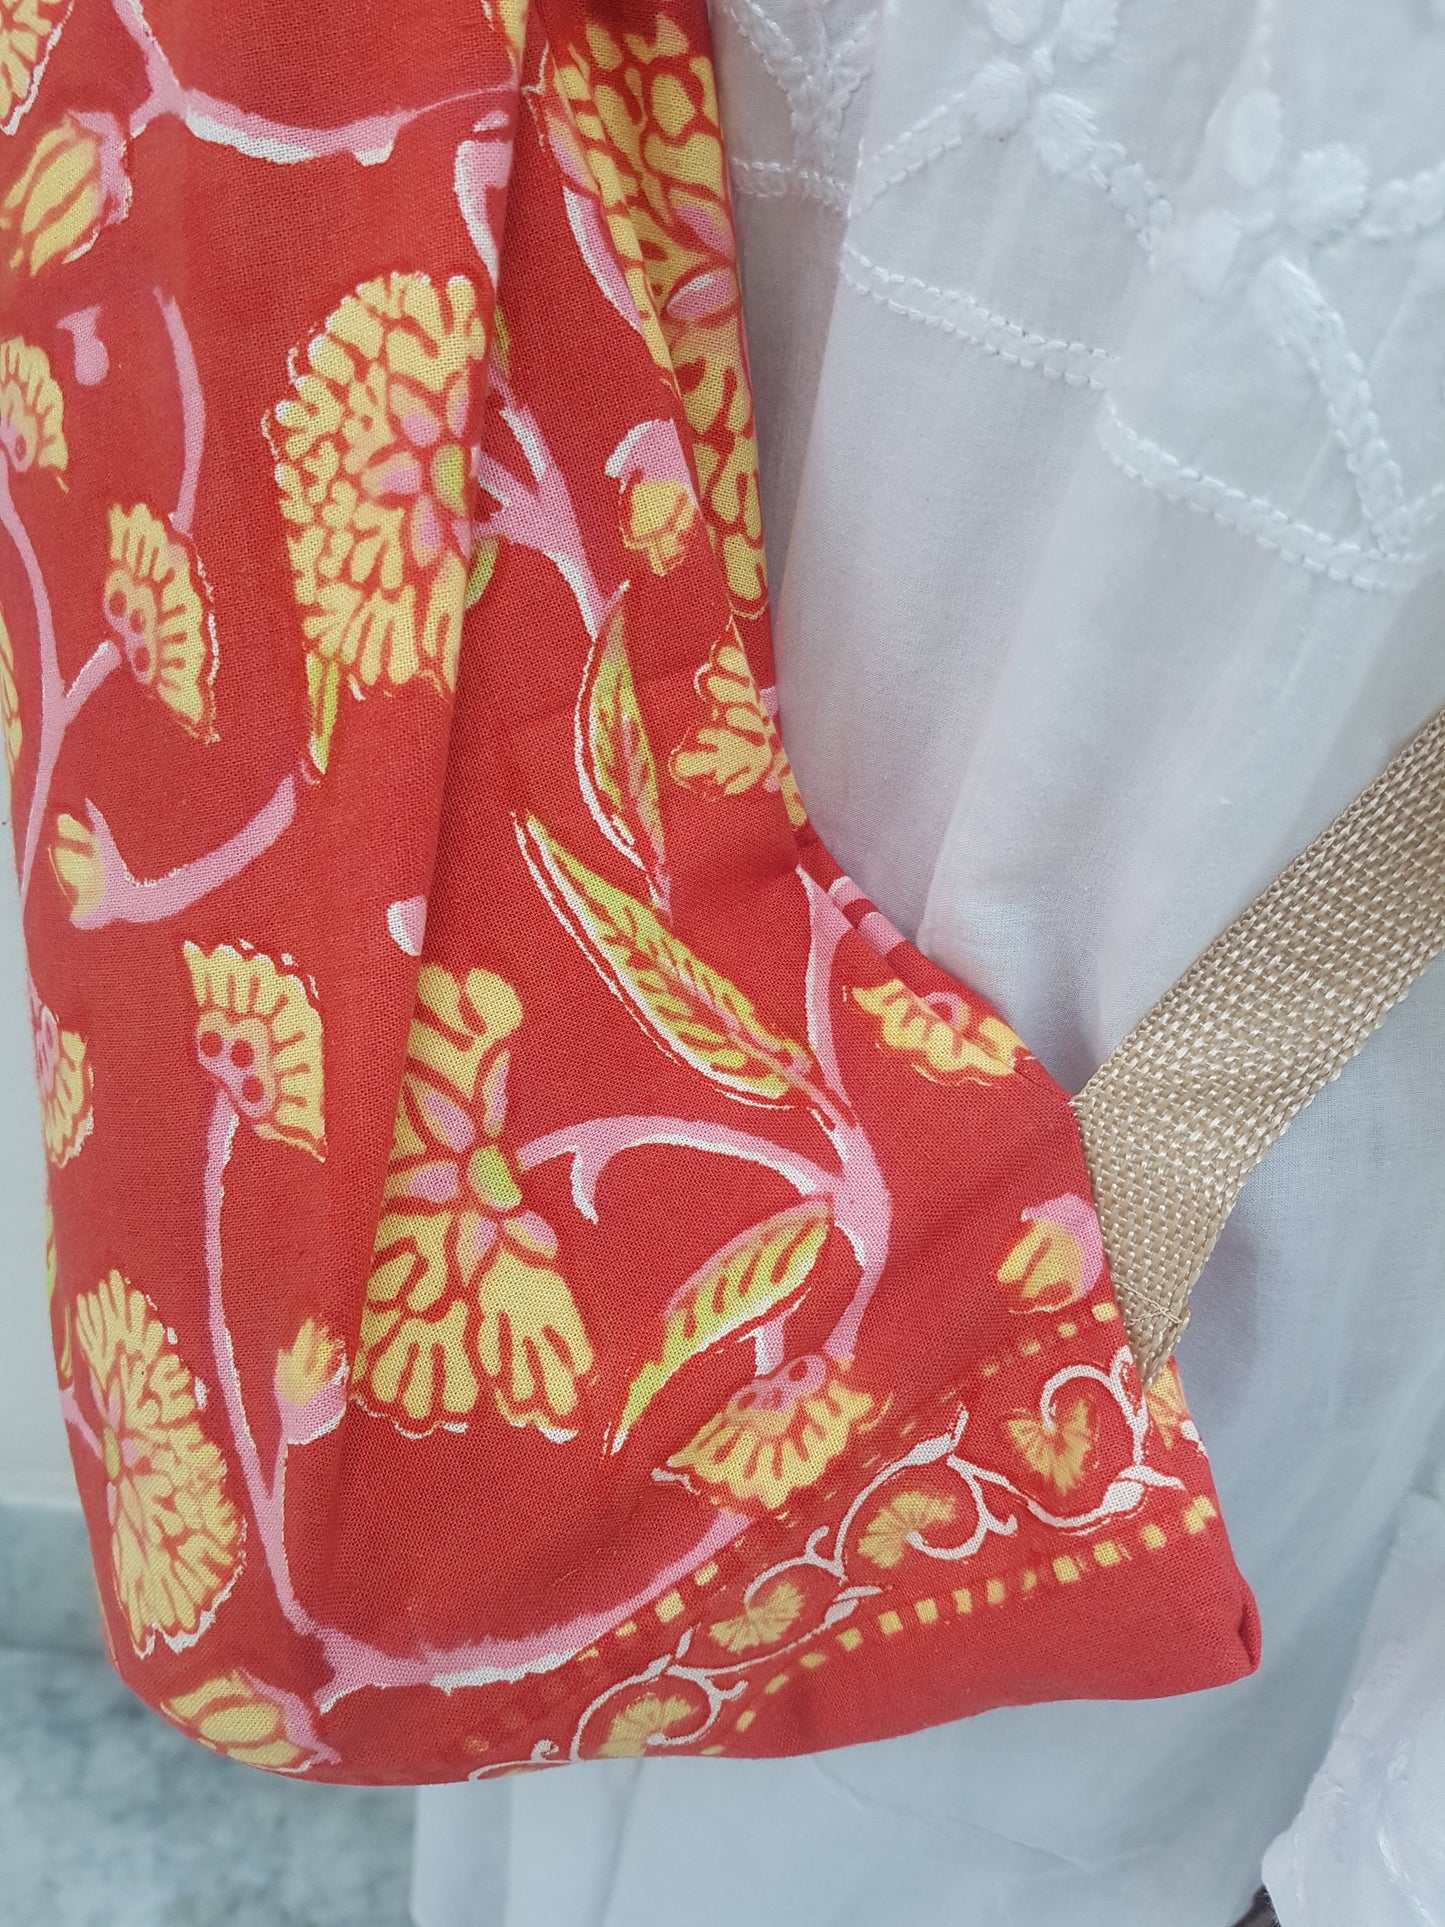 Detalle de correa beige en funda para tapete de yoga 100% algodón, estampada a mano roja con flores amarillas y tallos rosas. Hecha en la India.